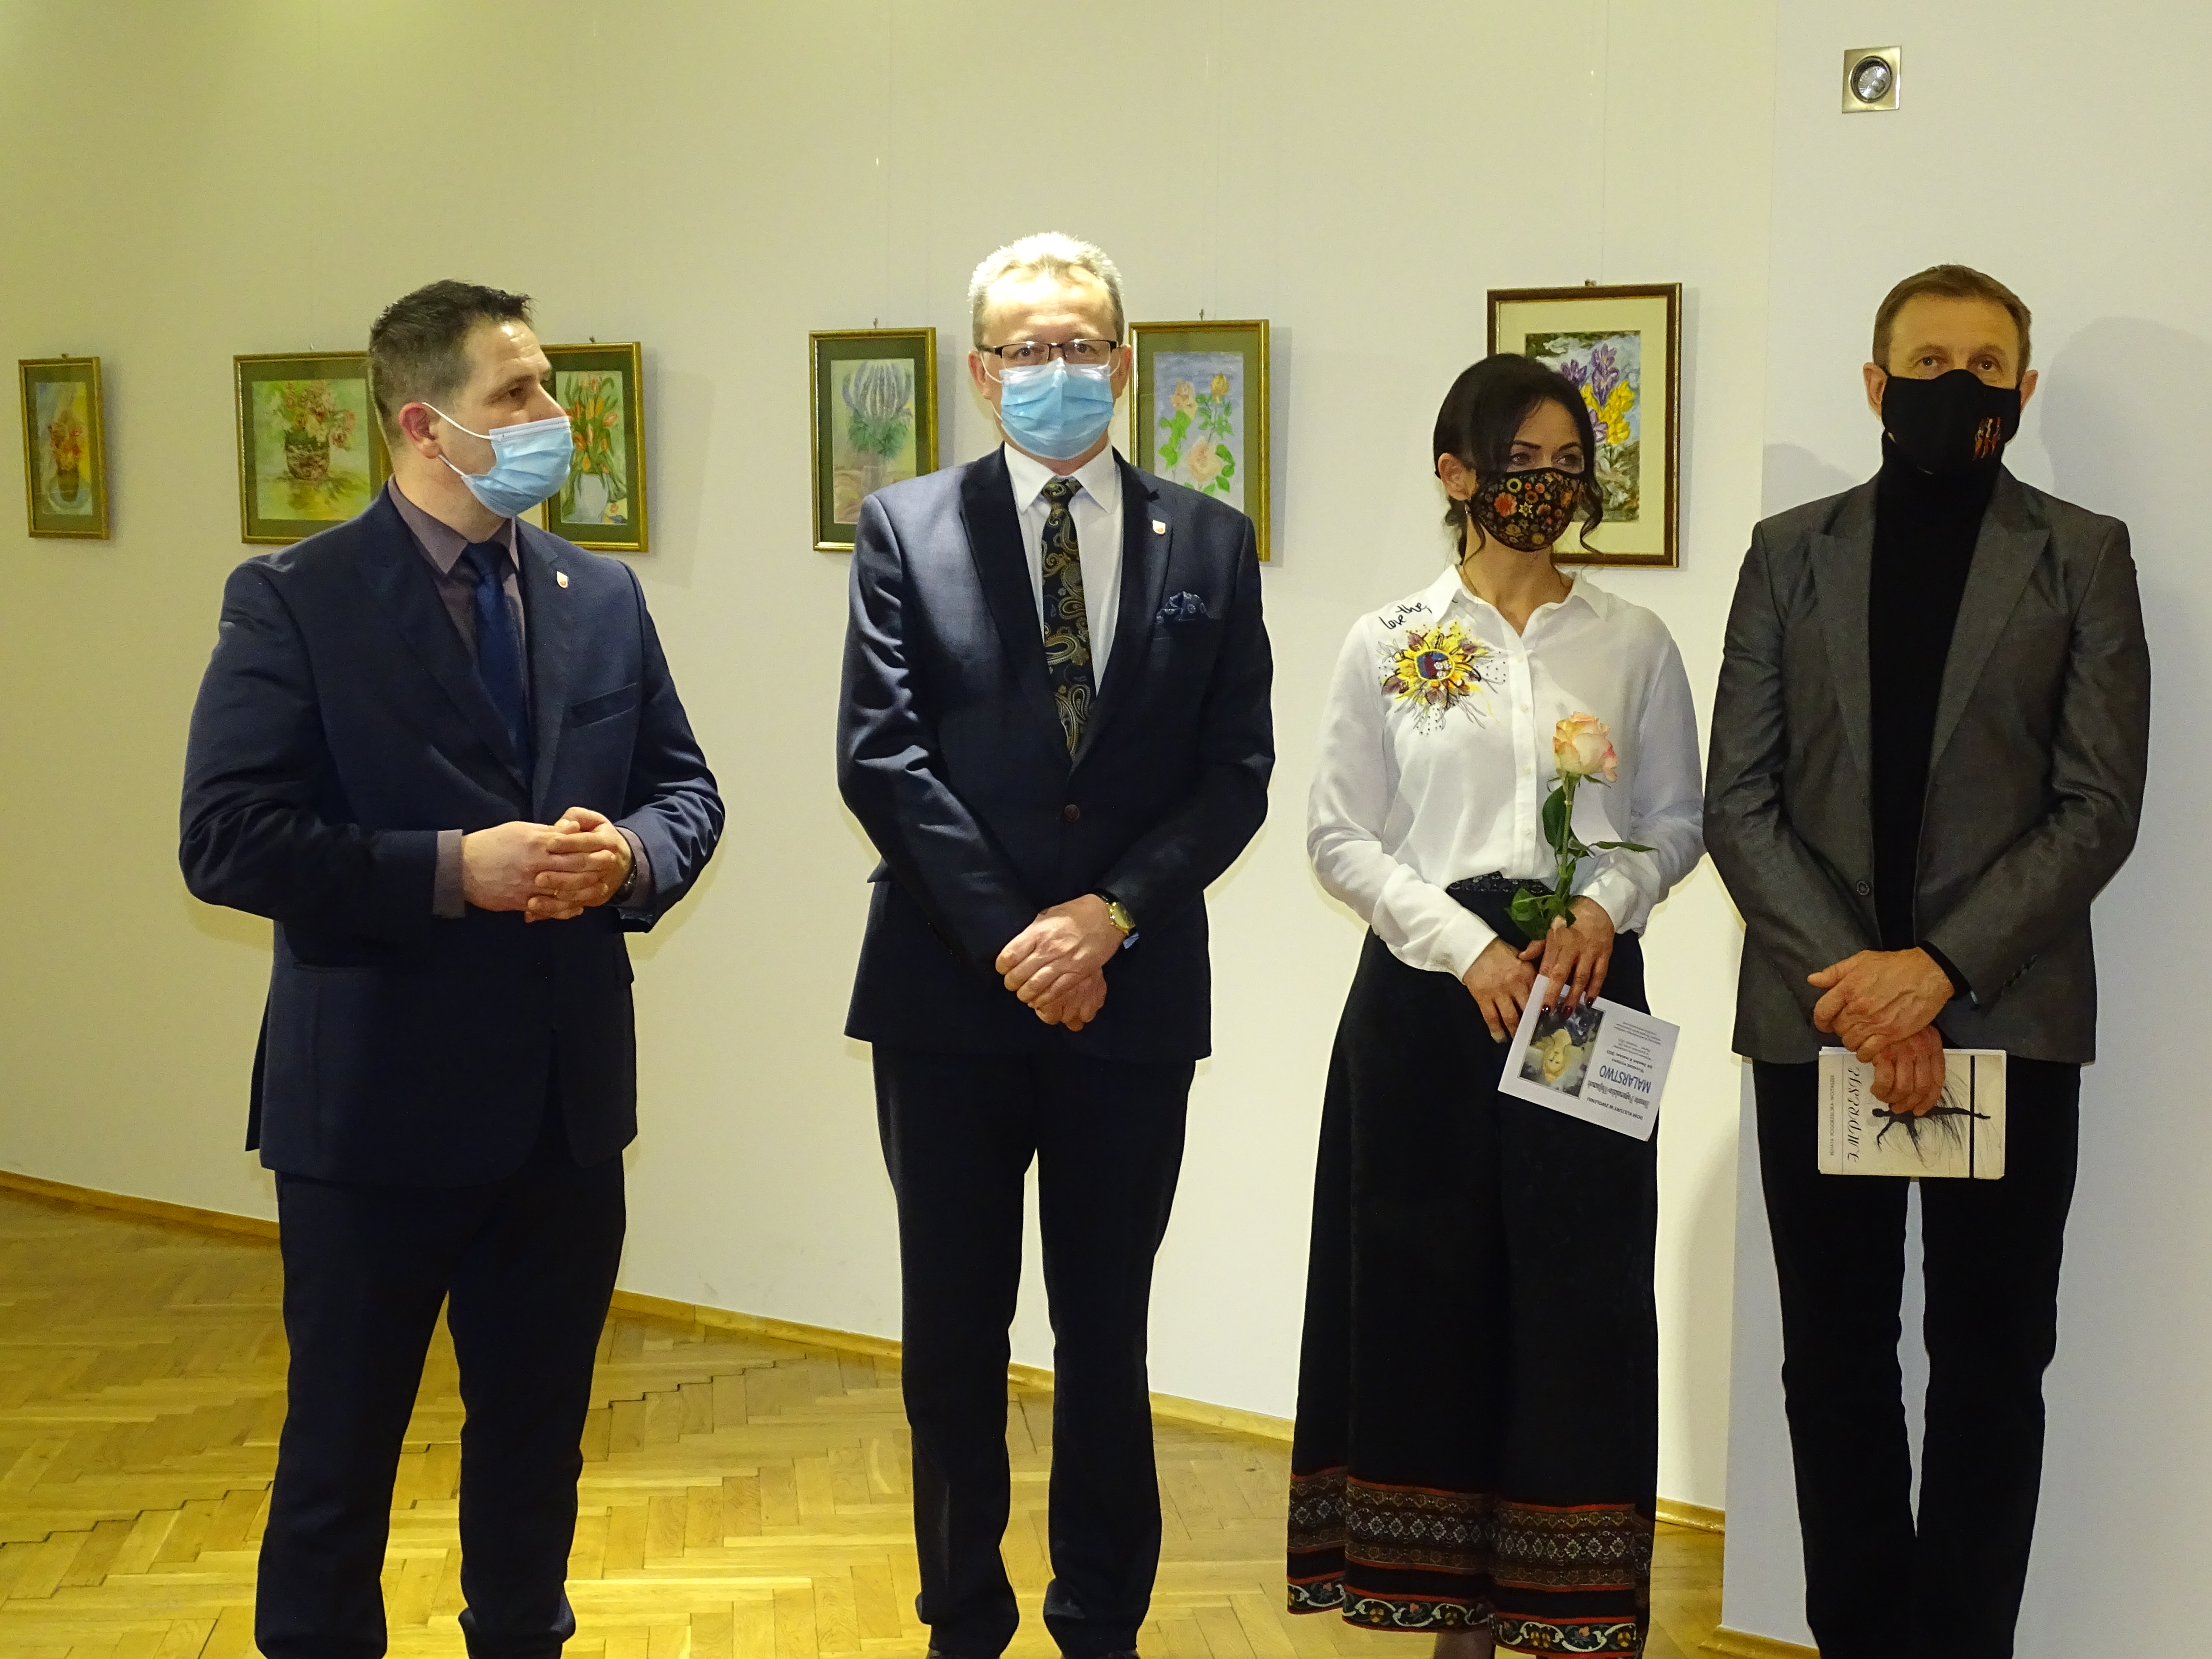 oficjalnego otwarcia wystawy dokonał burmistrz Zwolenia Arkadiusz Sulima